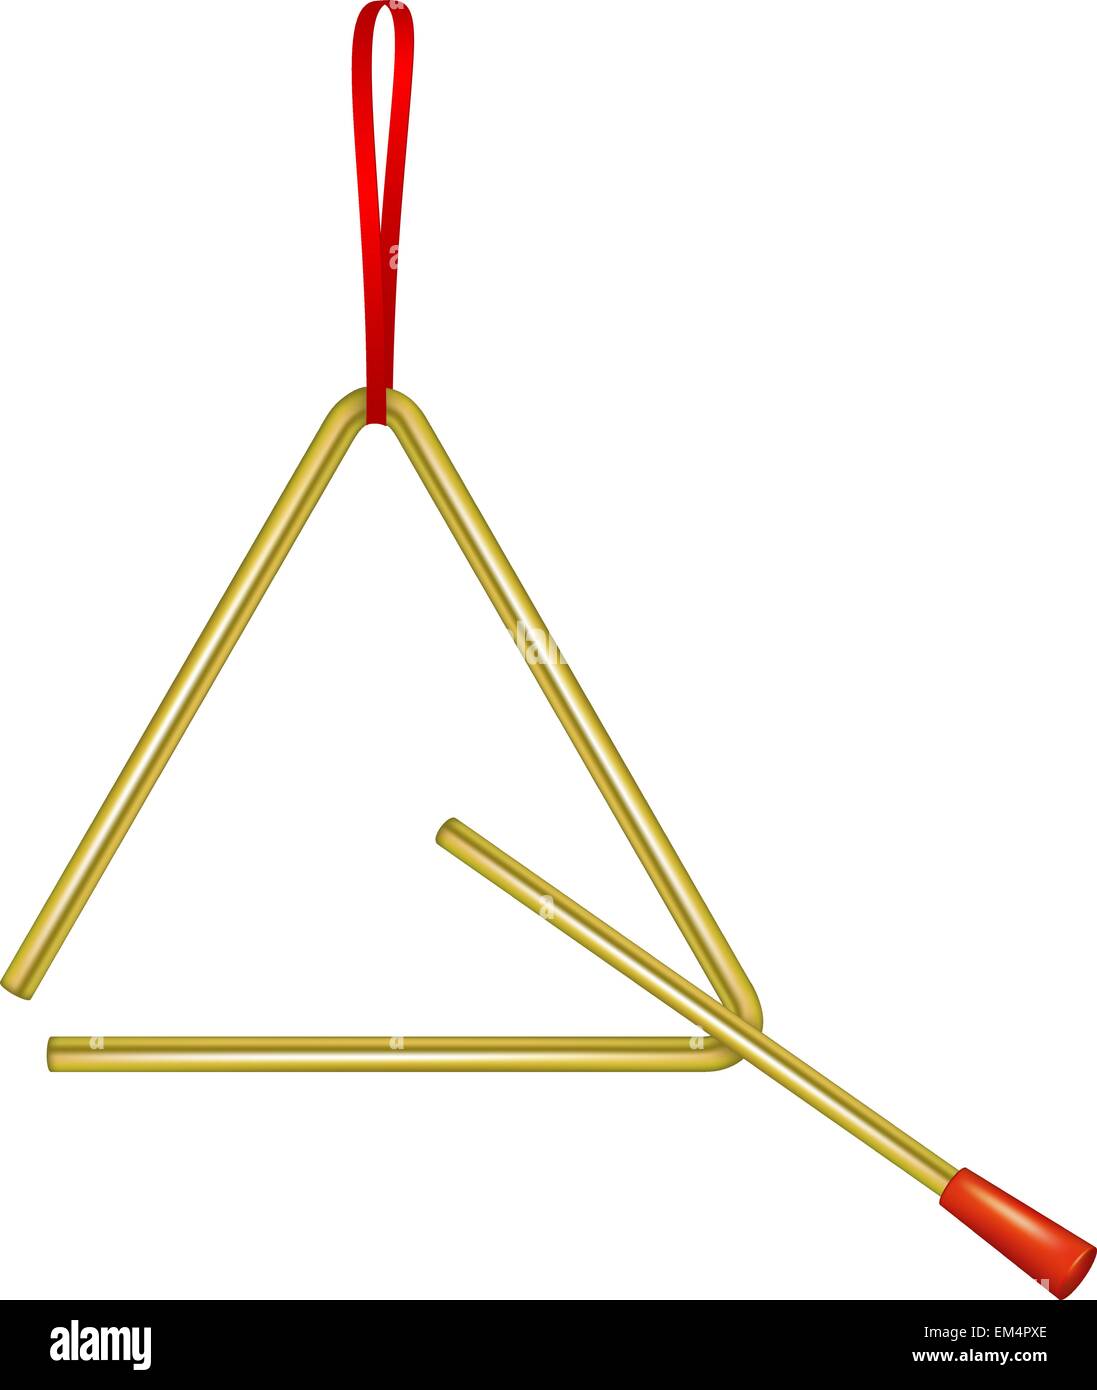 Triangle Instrument De Musique Dans La Conception D Or Image Vectorielle Stock Alamy